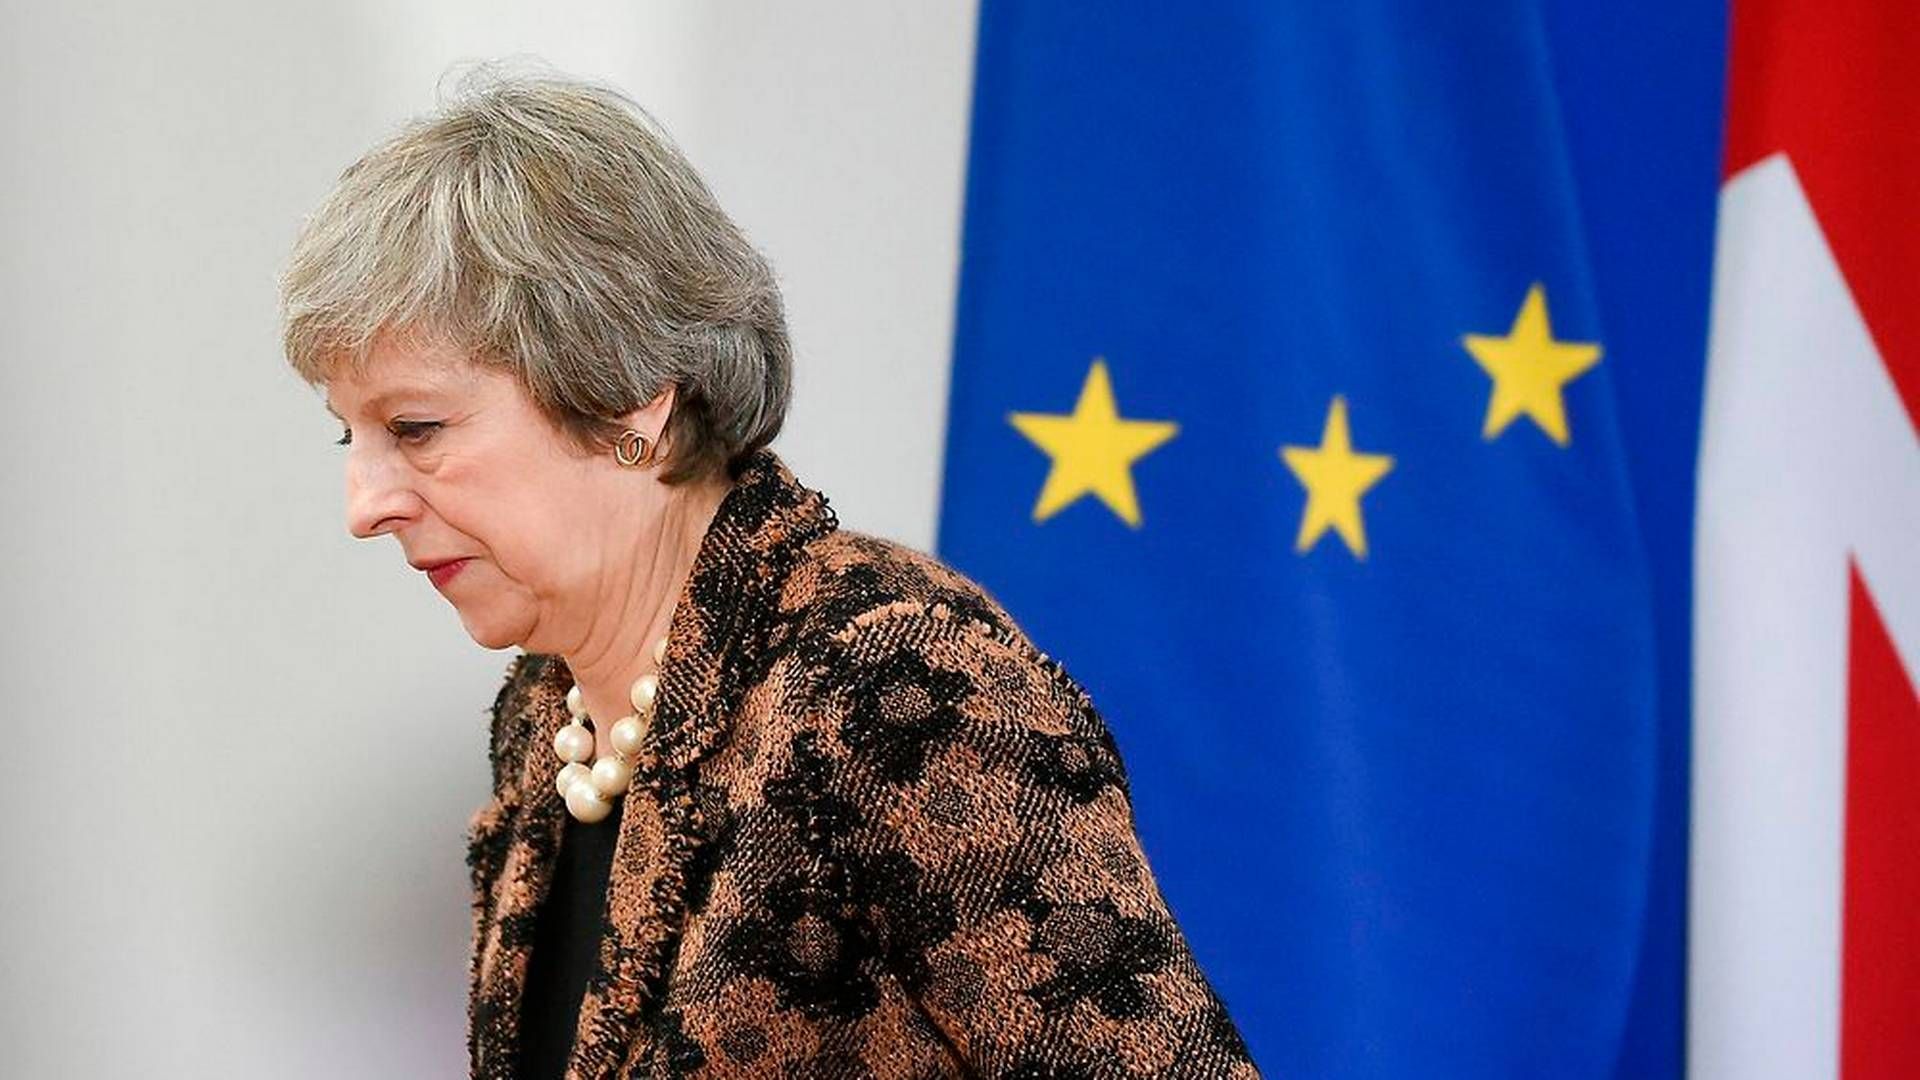 Den britiske premierminister, Theresa May, siger, at et brexit uden aftale ikke er i nogens interesse. | Foto: John Thys/Ritzau Scanpix